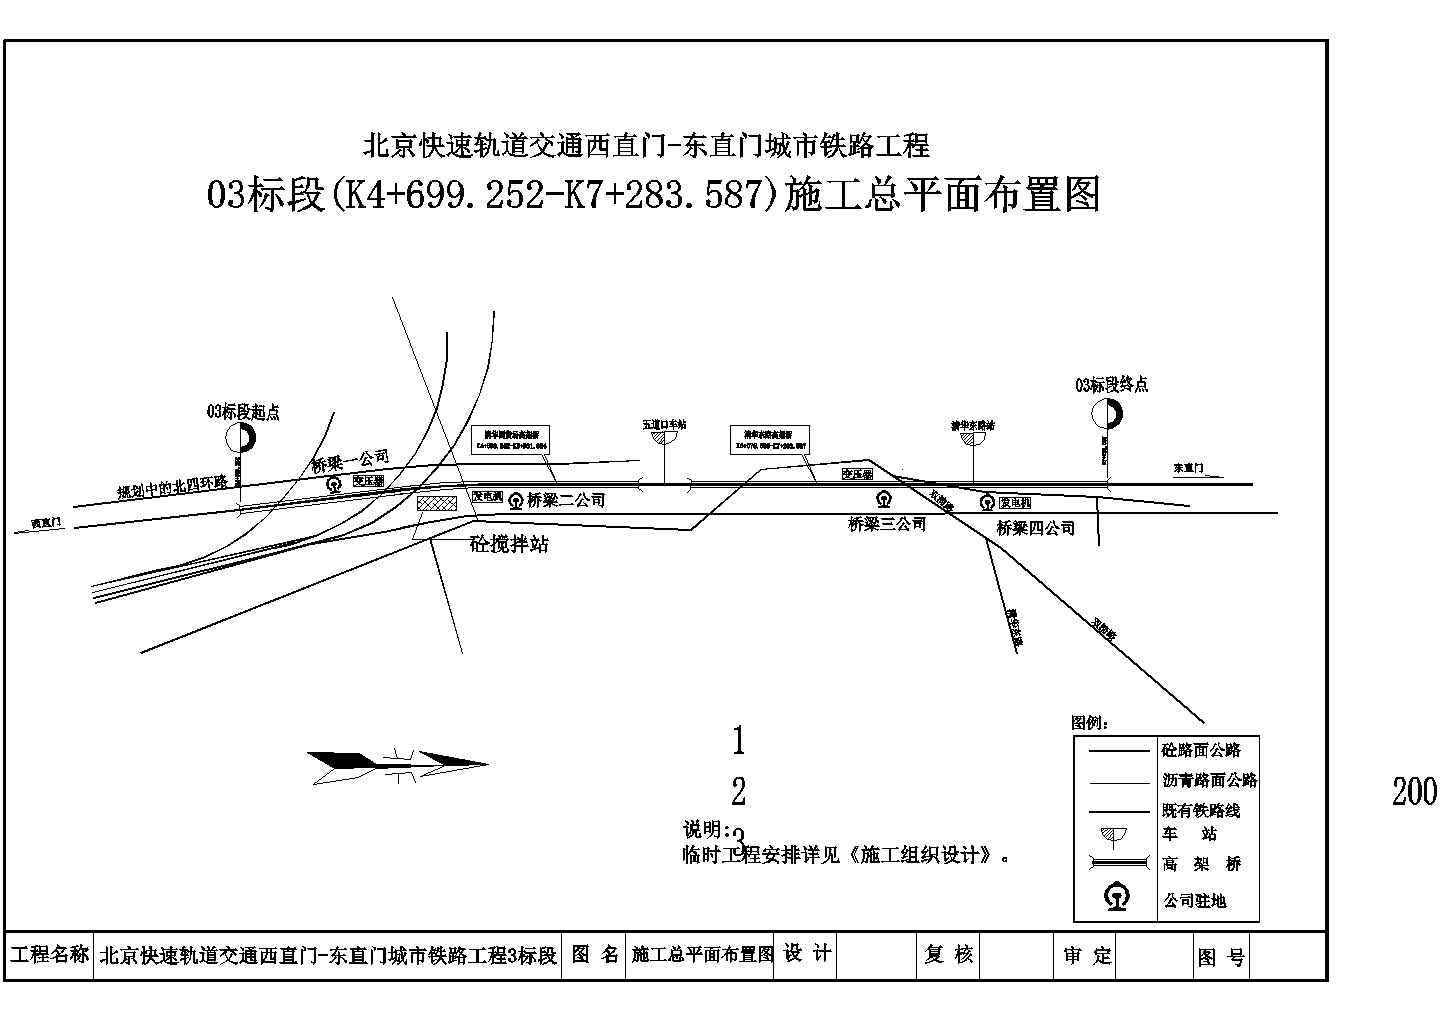 北京快速轨道交通西直门-东直门城市铁路工程03标段施工总平面布置图